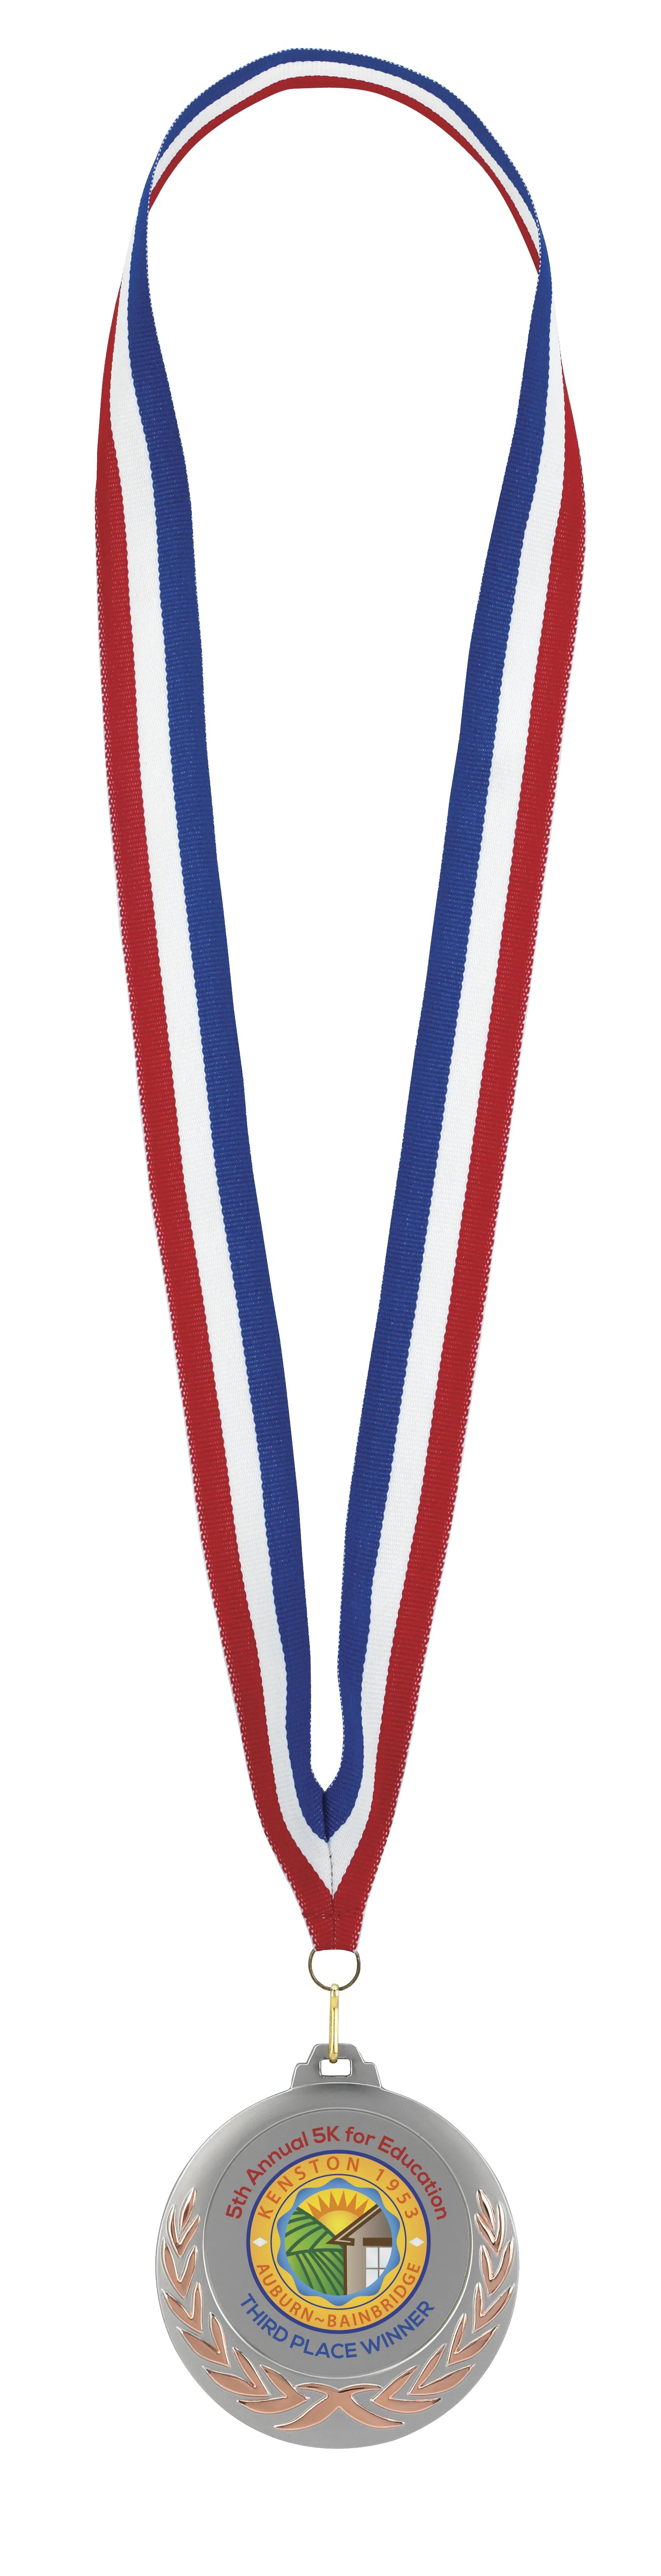 Laurel Wreath Medal 10 of 26